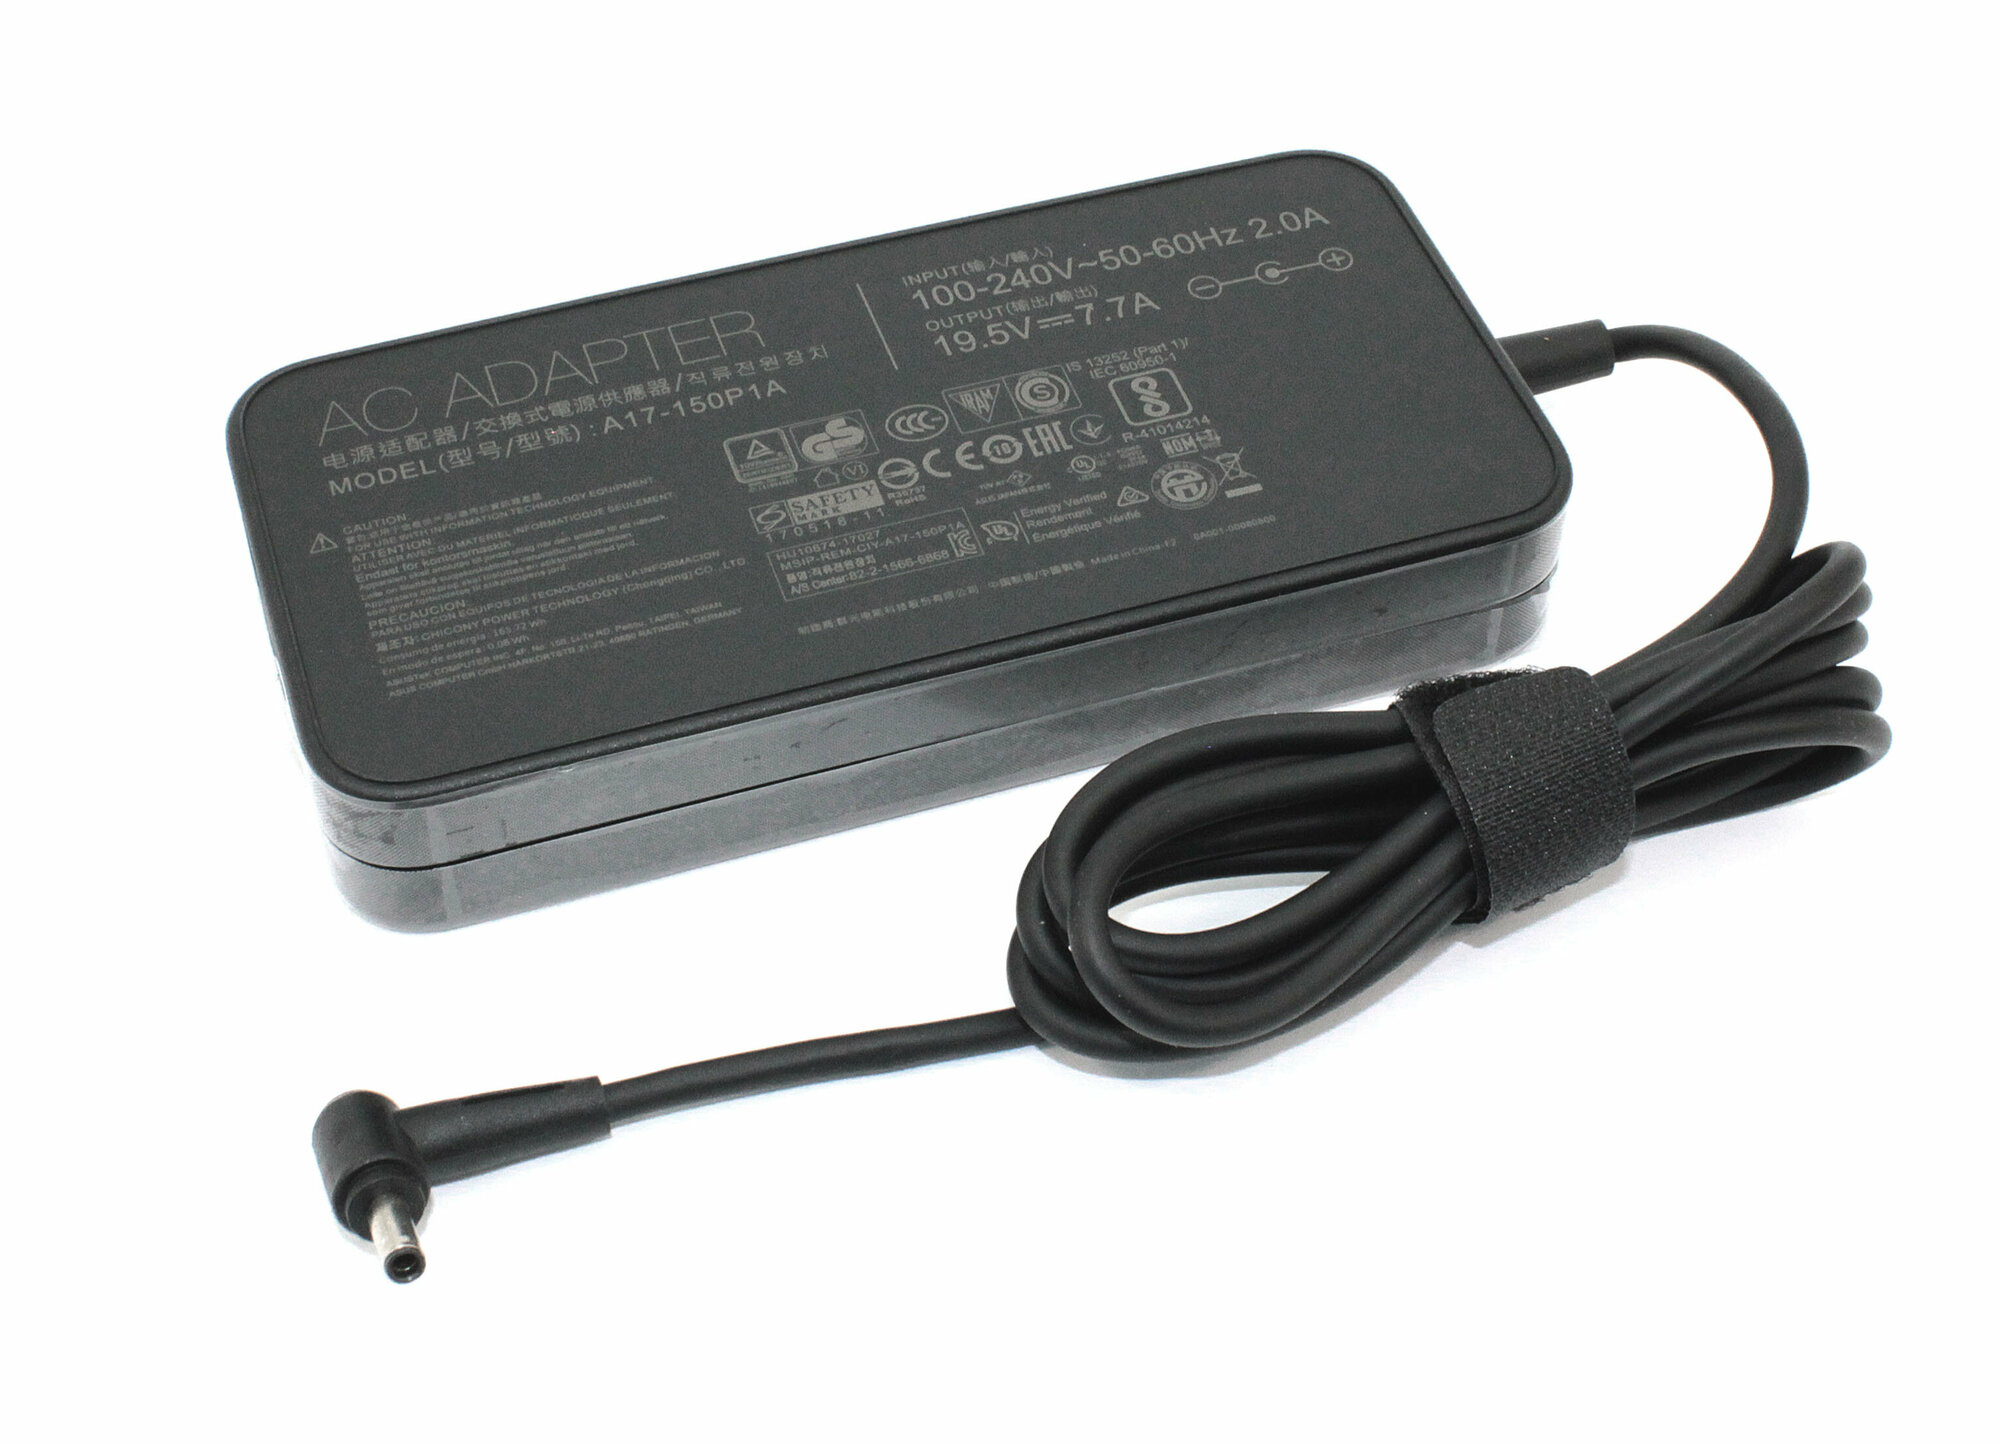 Блок питания (сетевой адаптер) для ноутбуков Asus 19.5V 7.7A 150W 4.5x3.0mm pin